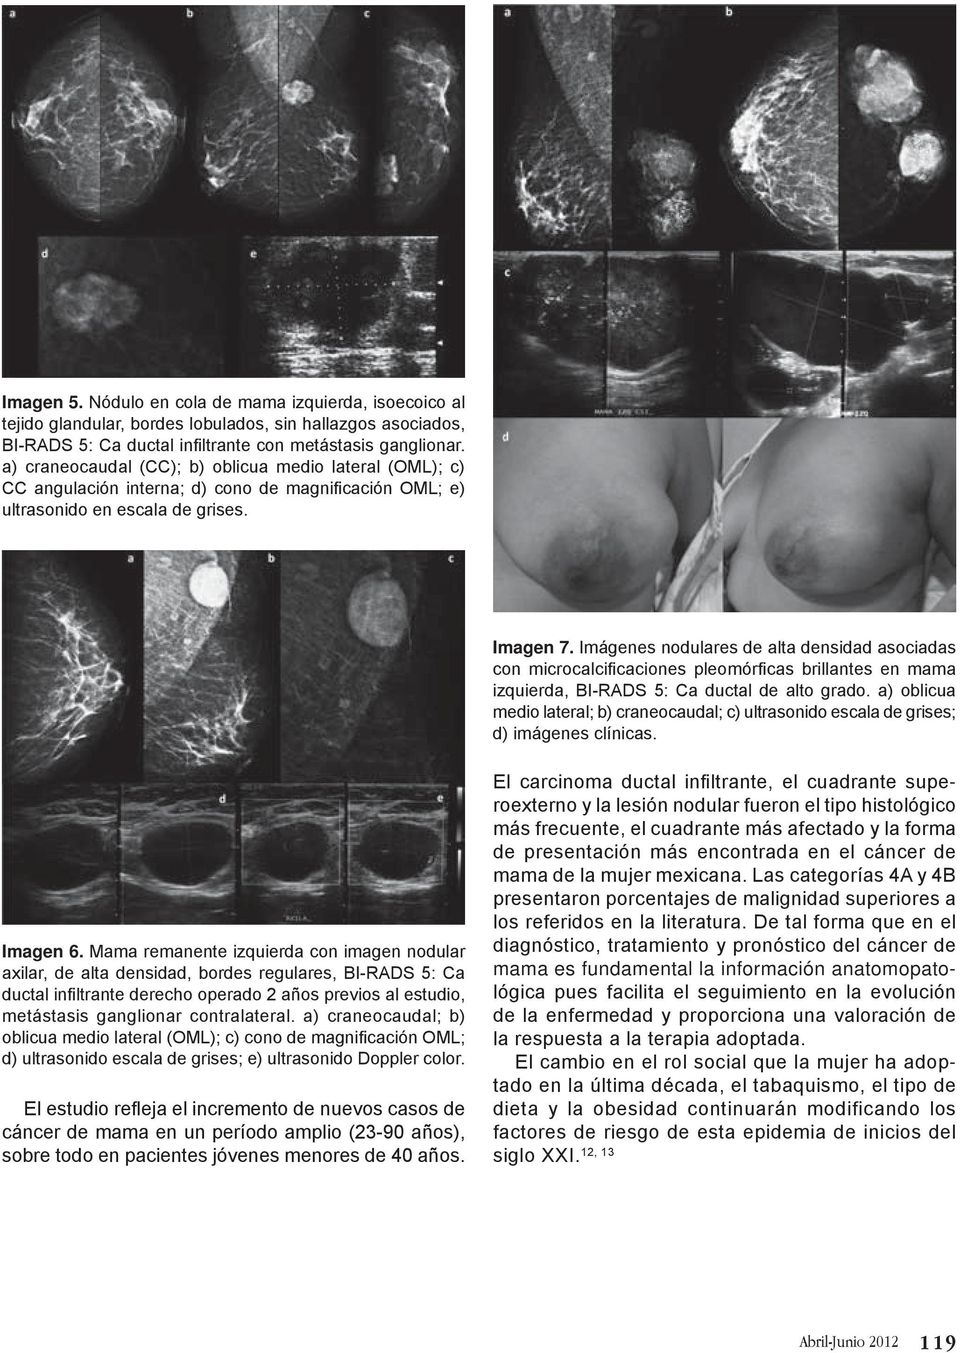 Imágenes nodulares de alta densidad asociadas con microcalcificaciones pleomórficas brillantes en mama izquierda, BI-RADS 5: Ca ductal de alto grado.